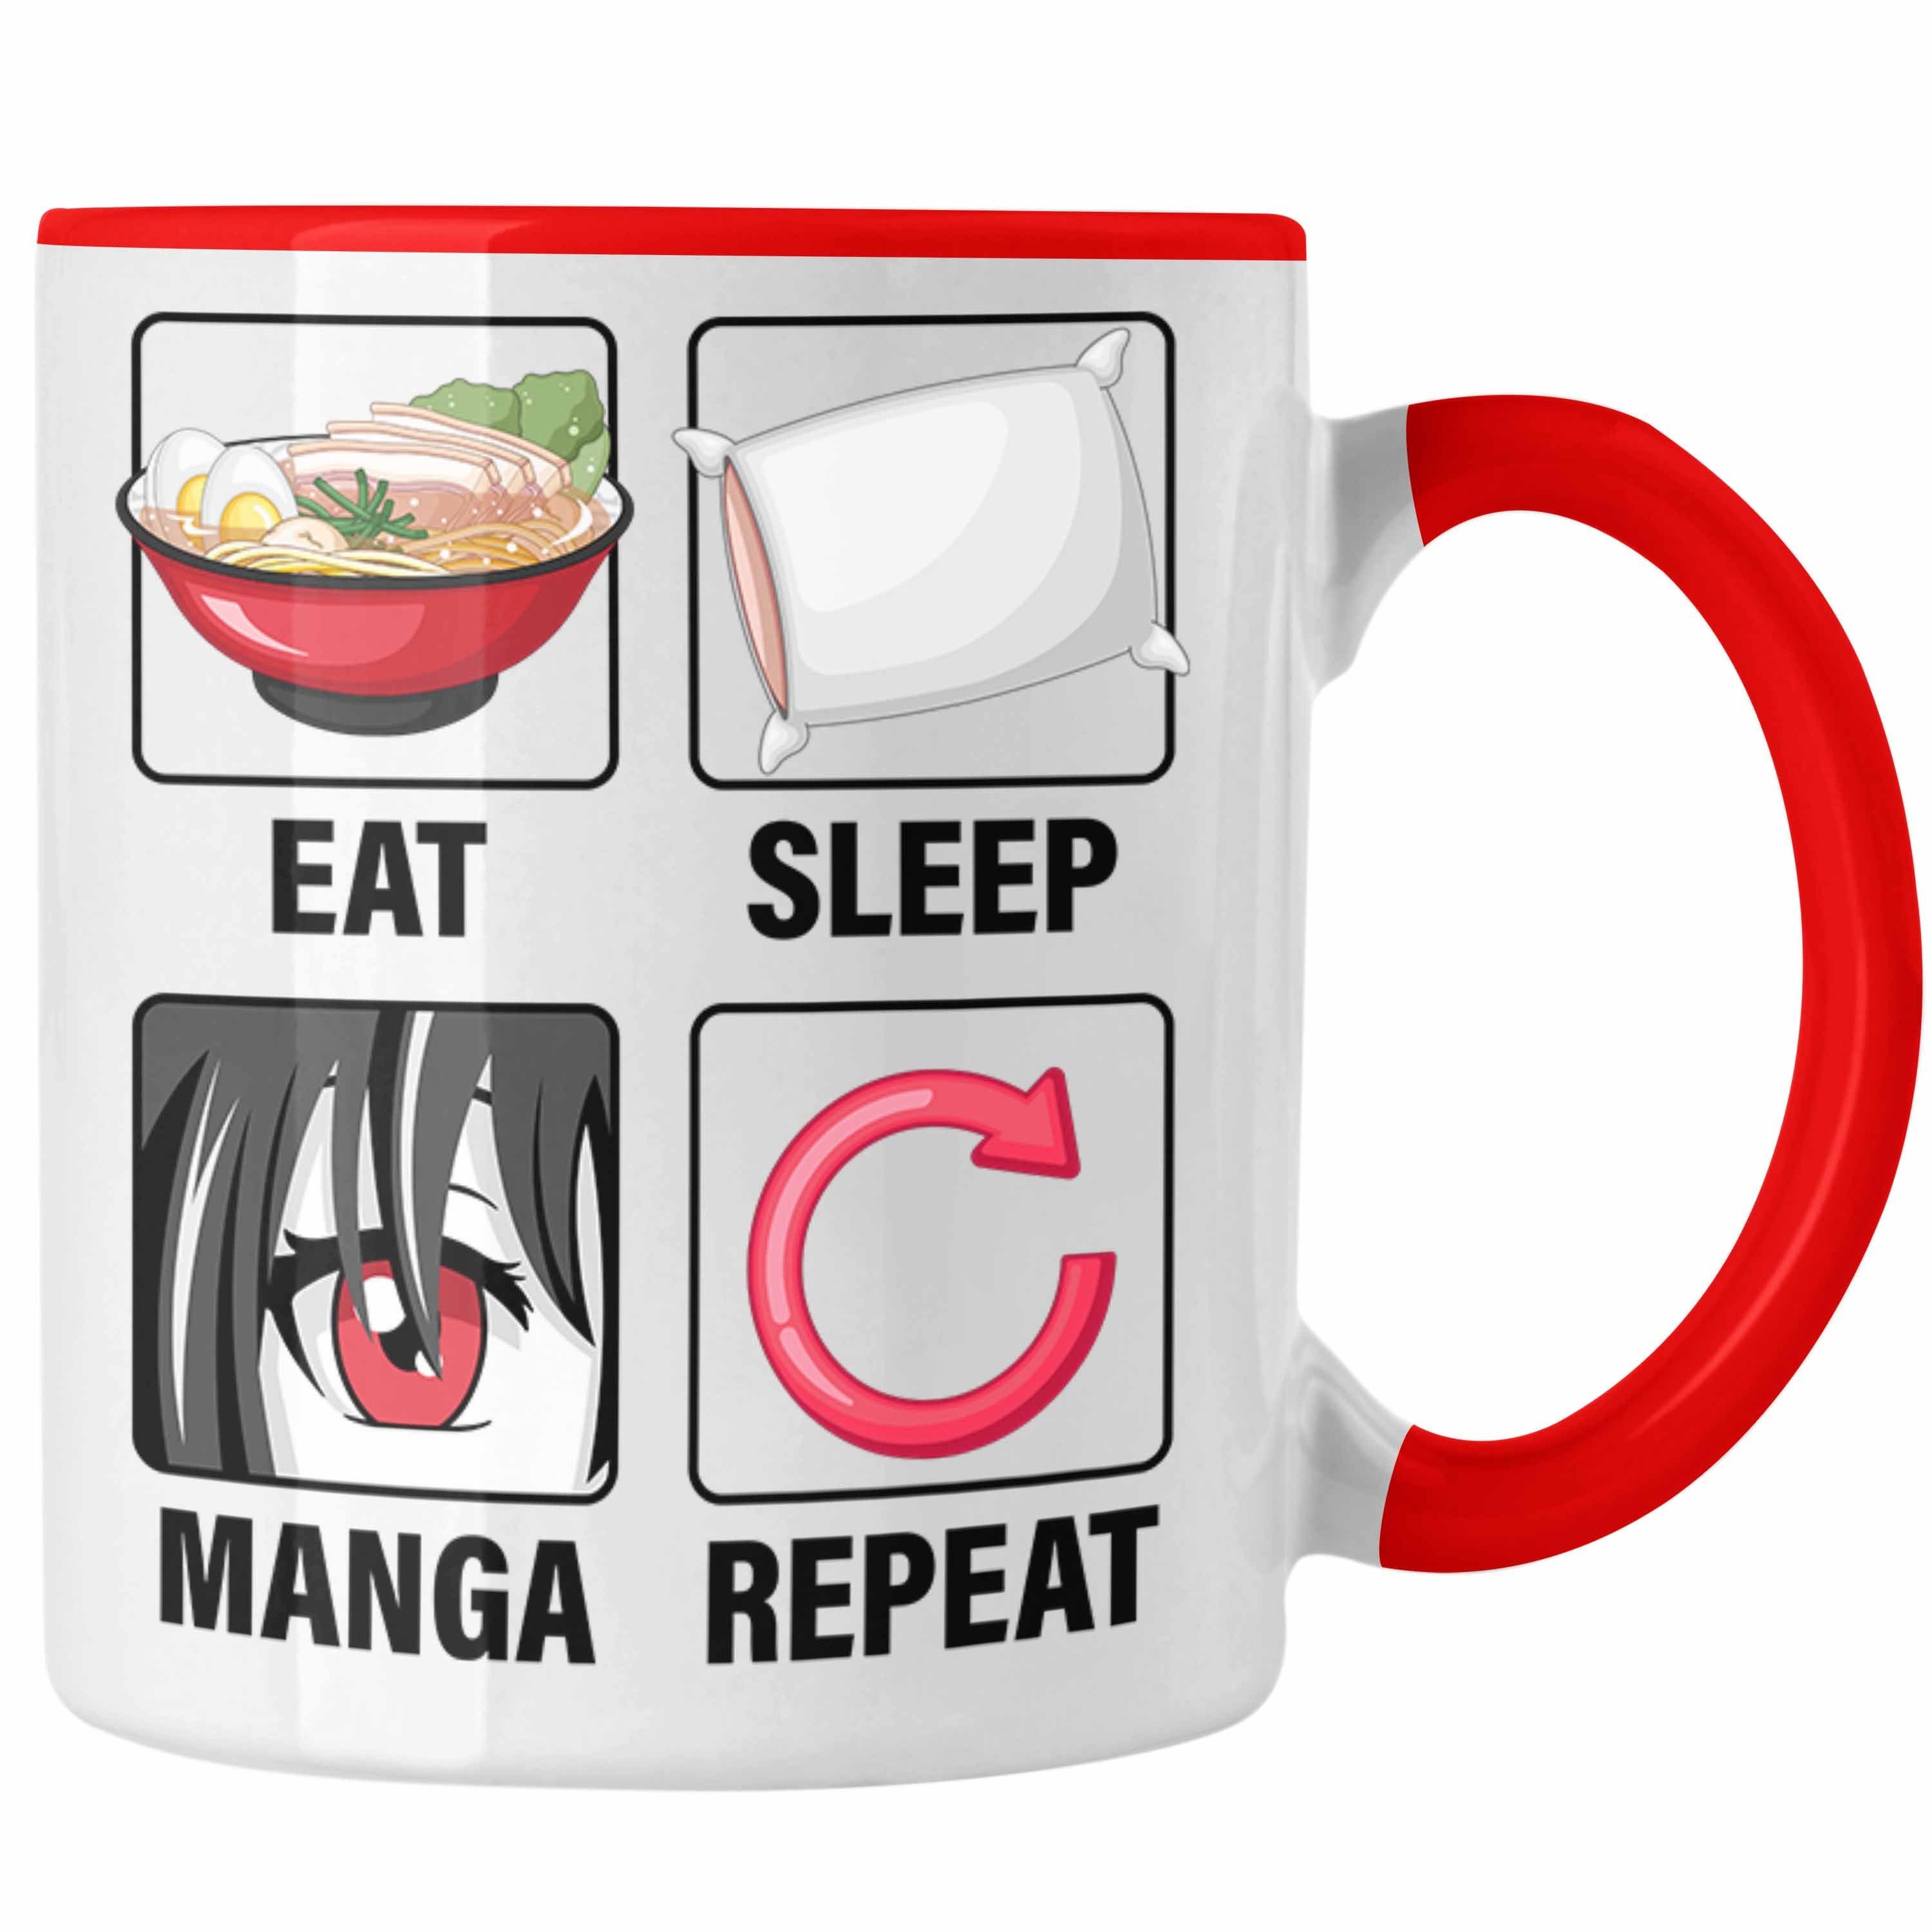 Trendation Manga Eat Liebhaber Manga Sleep Tasse Geschenkidee Geschenk Rot Repeat Tasse